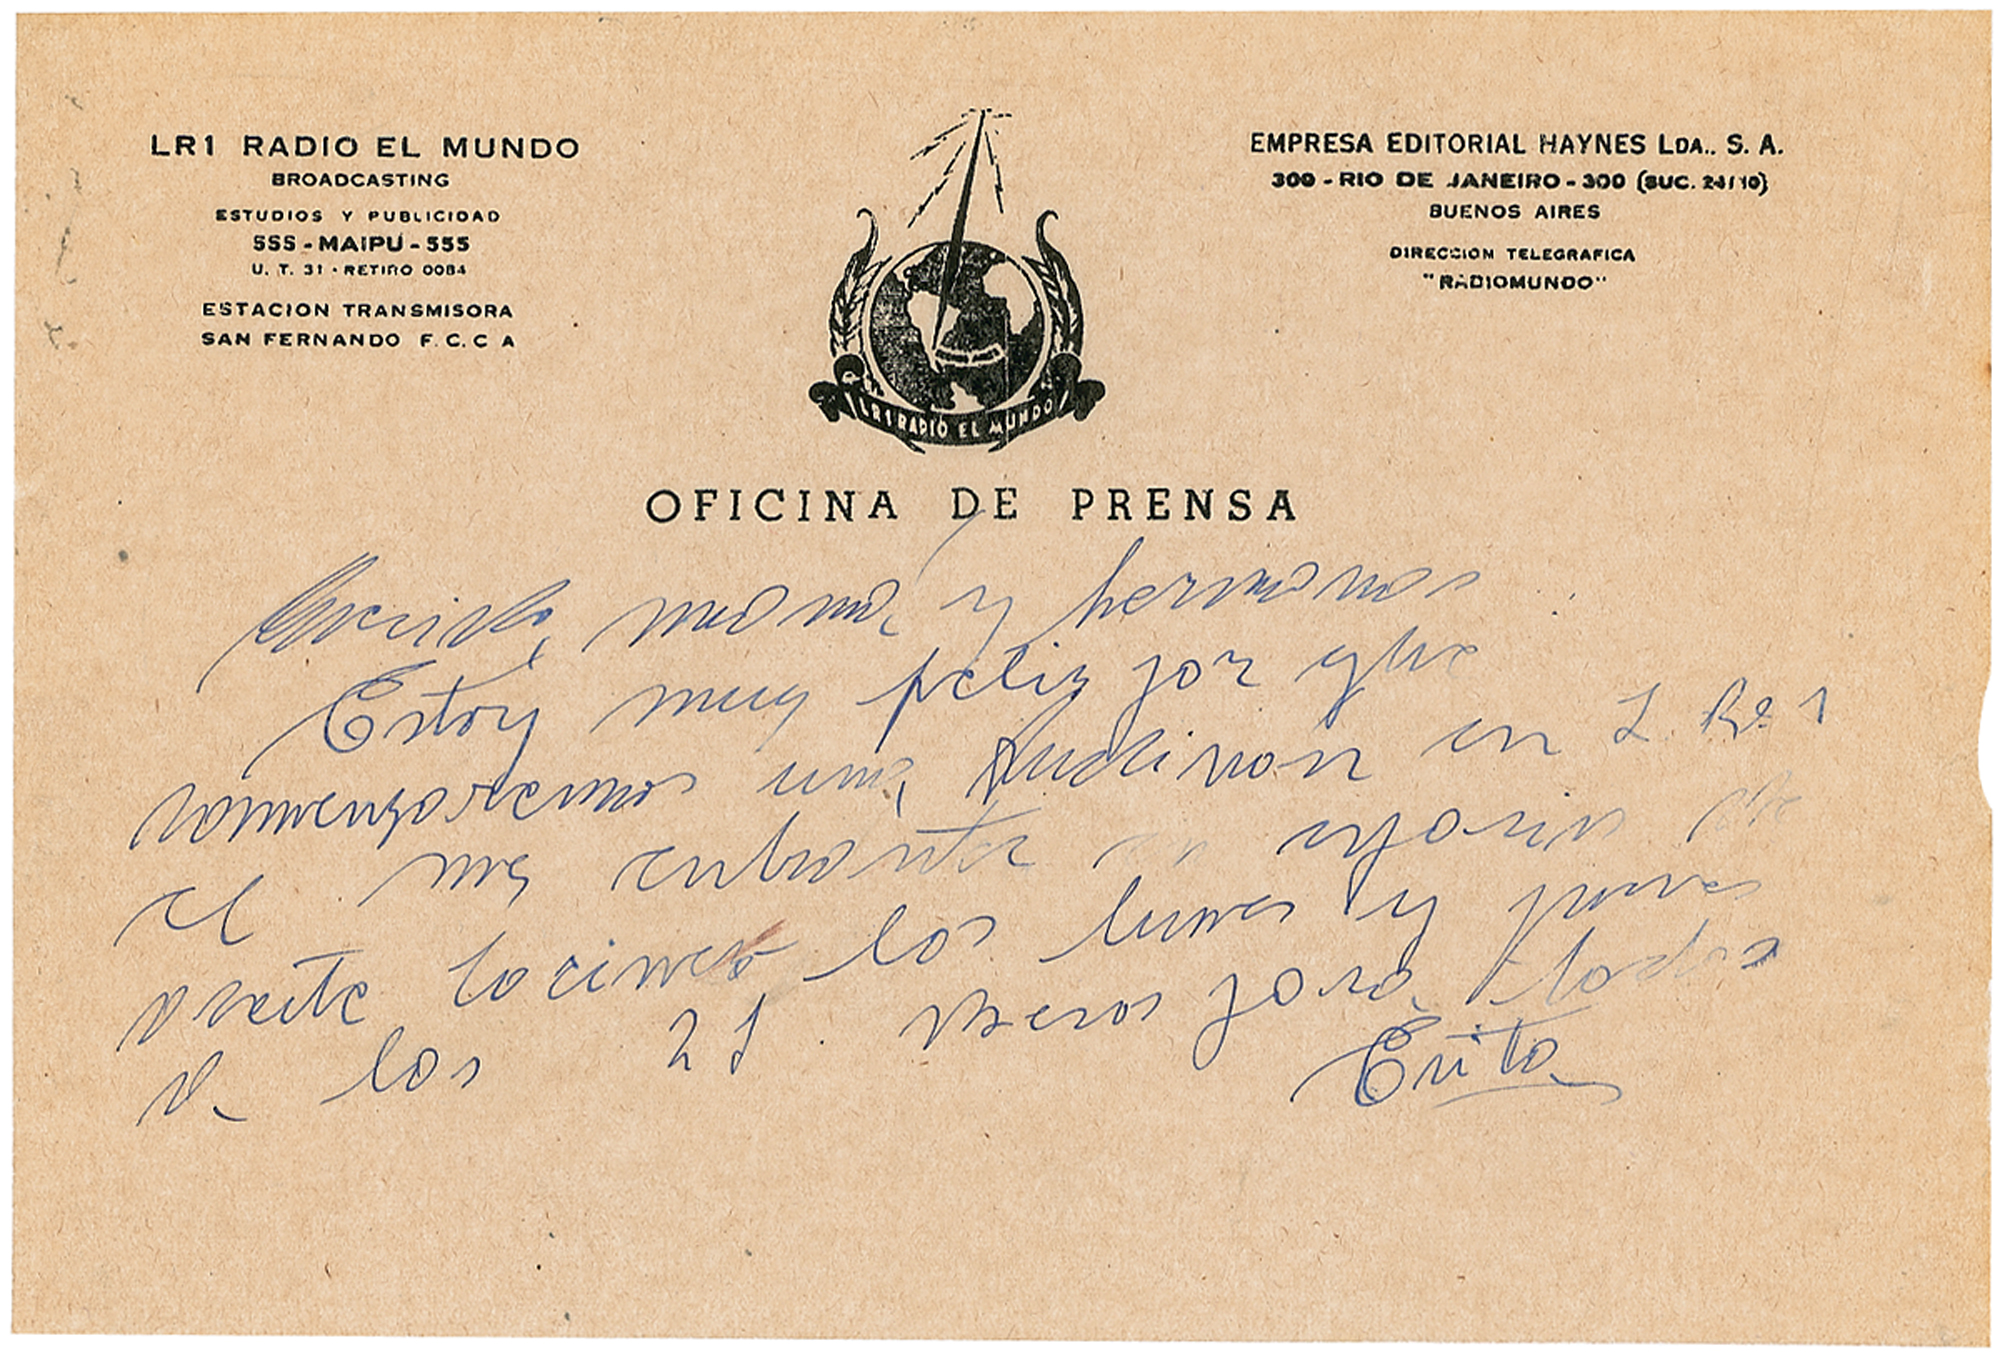 Lot #336 Eva Peron Autograph Letter Signed